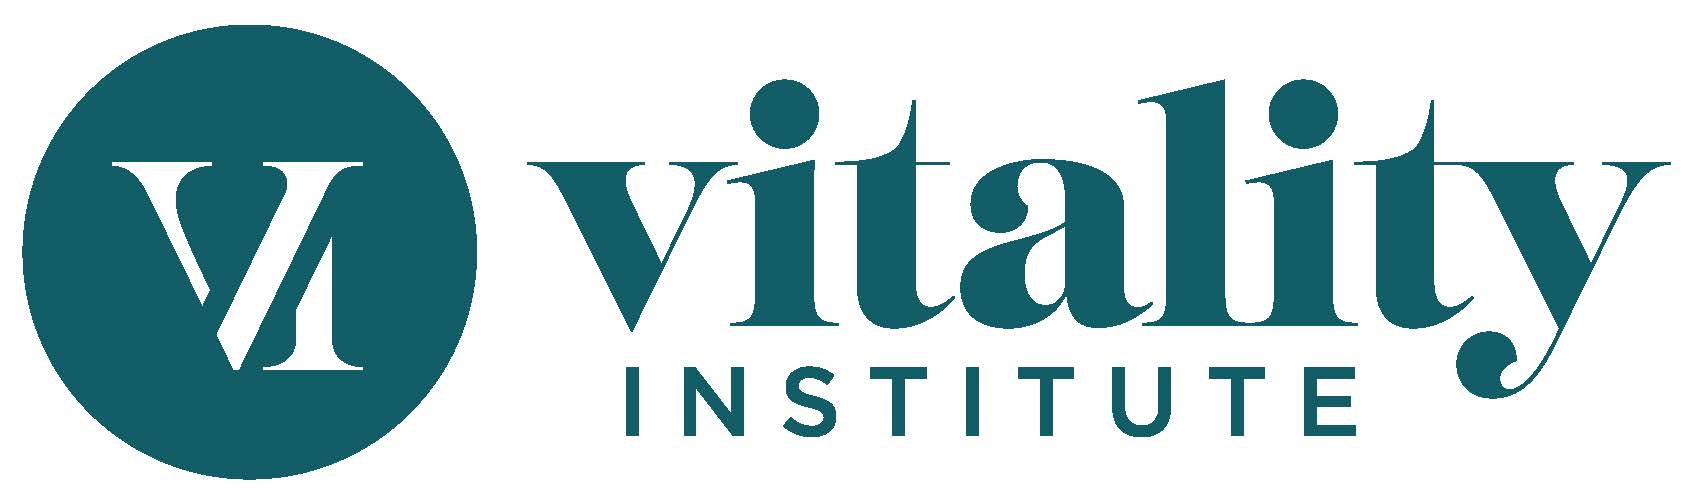 Vitality Institute